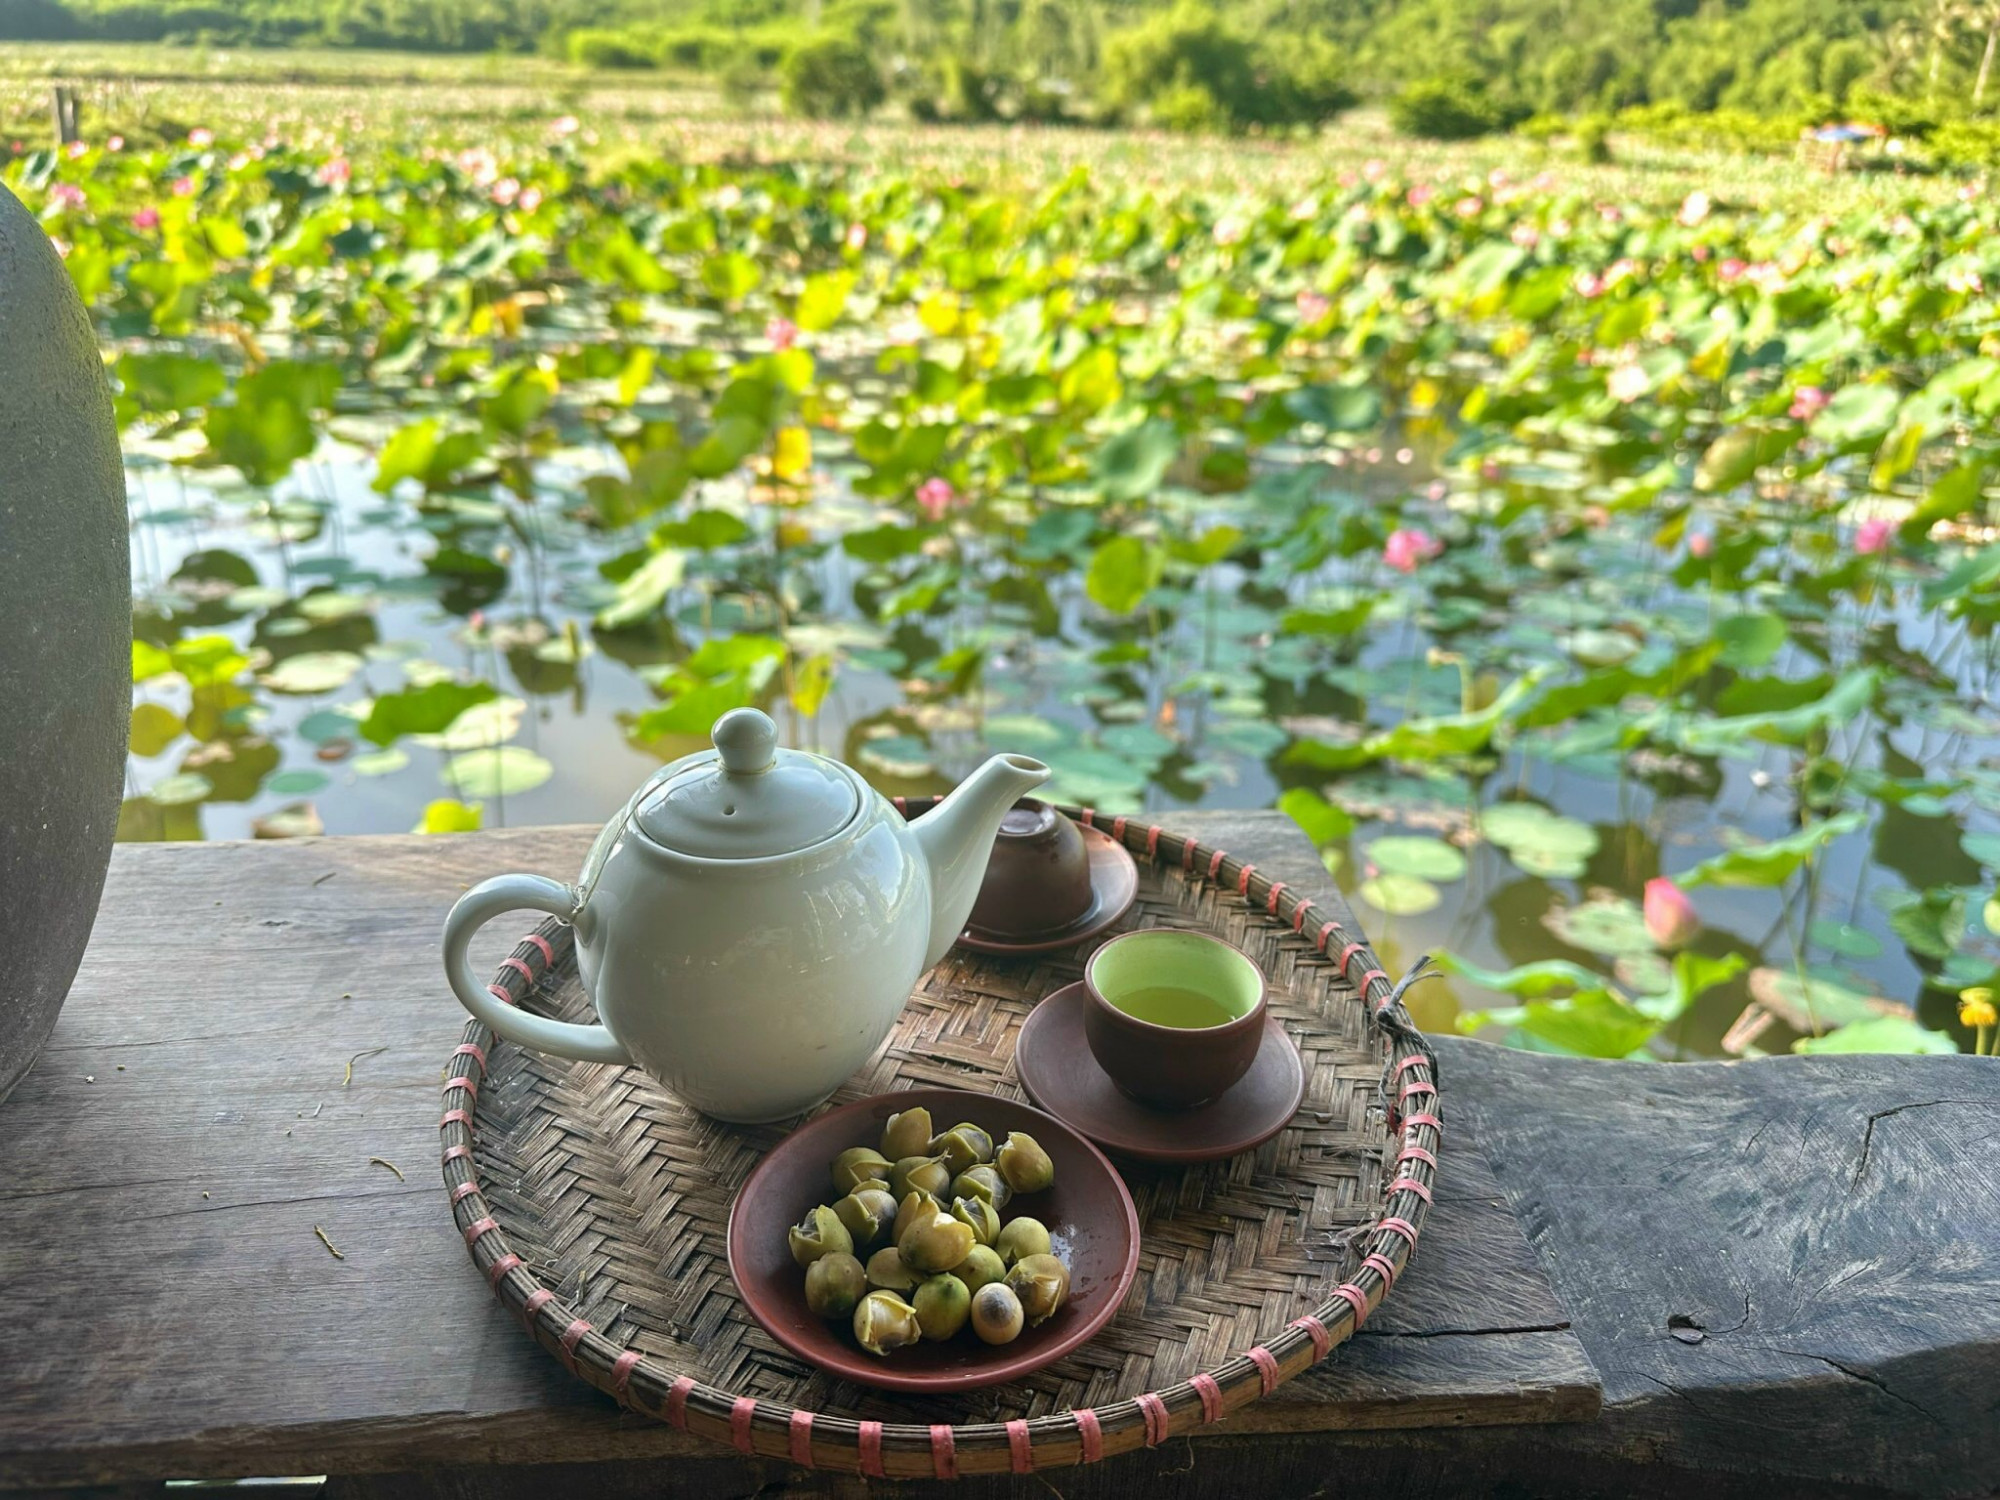 Sau khi ngắm bình minh, ăn sáng tại lều thì bạn có thể ghé làng sen của chú Hạnh gần đó, chỉ cách 1 km để thưởng thức trà tim sen được chú ủ từ đêm tới sáng.